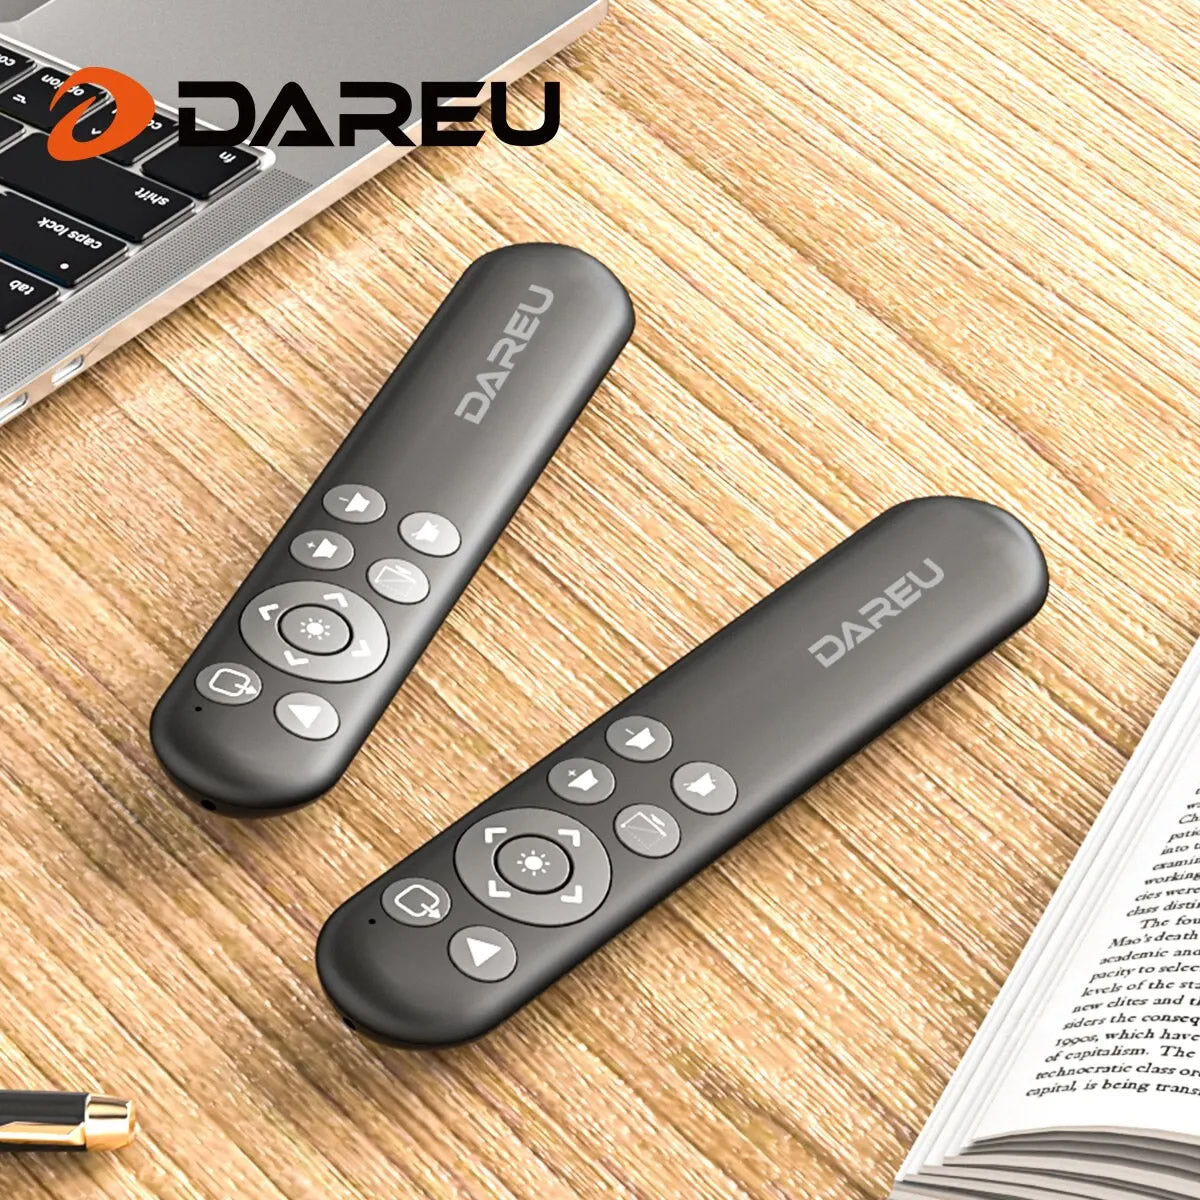 Dareu 2.4Ghz Wireless Presentation Remote - With Red Laser Pointer